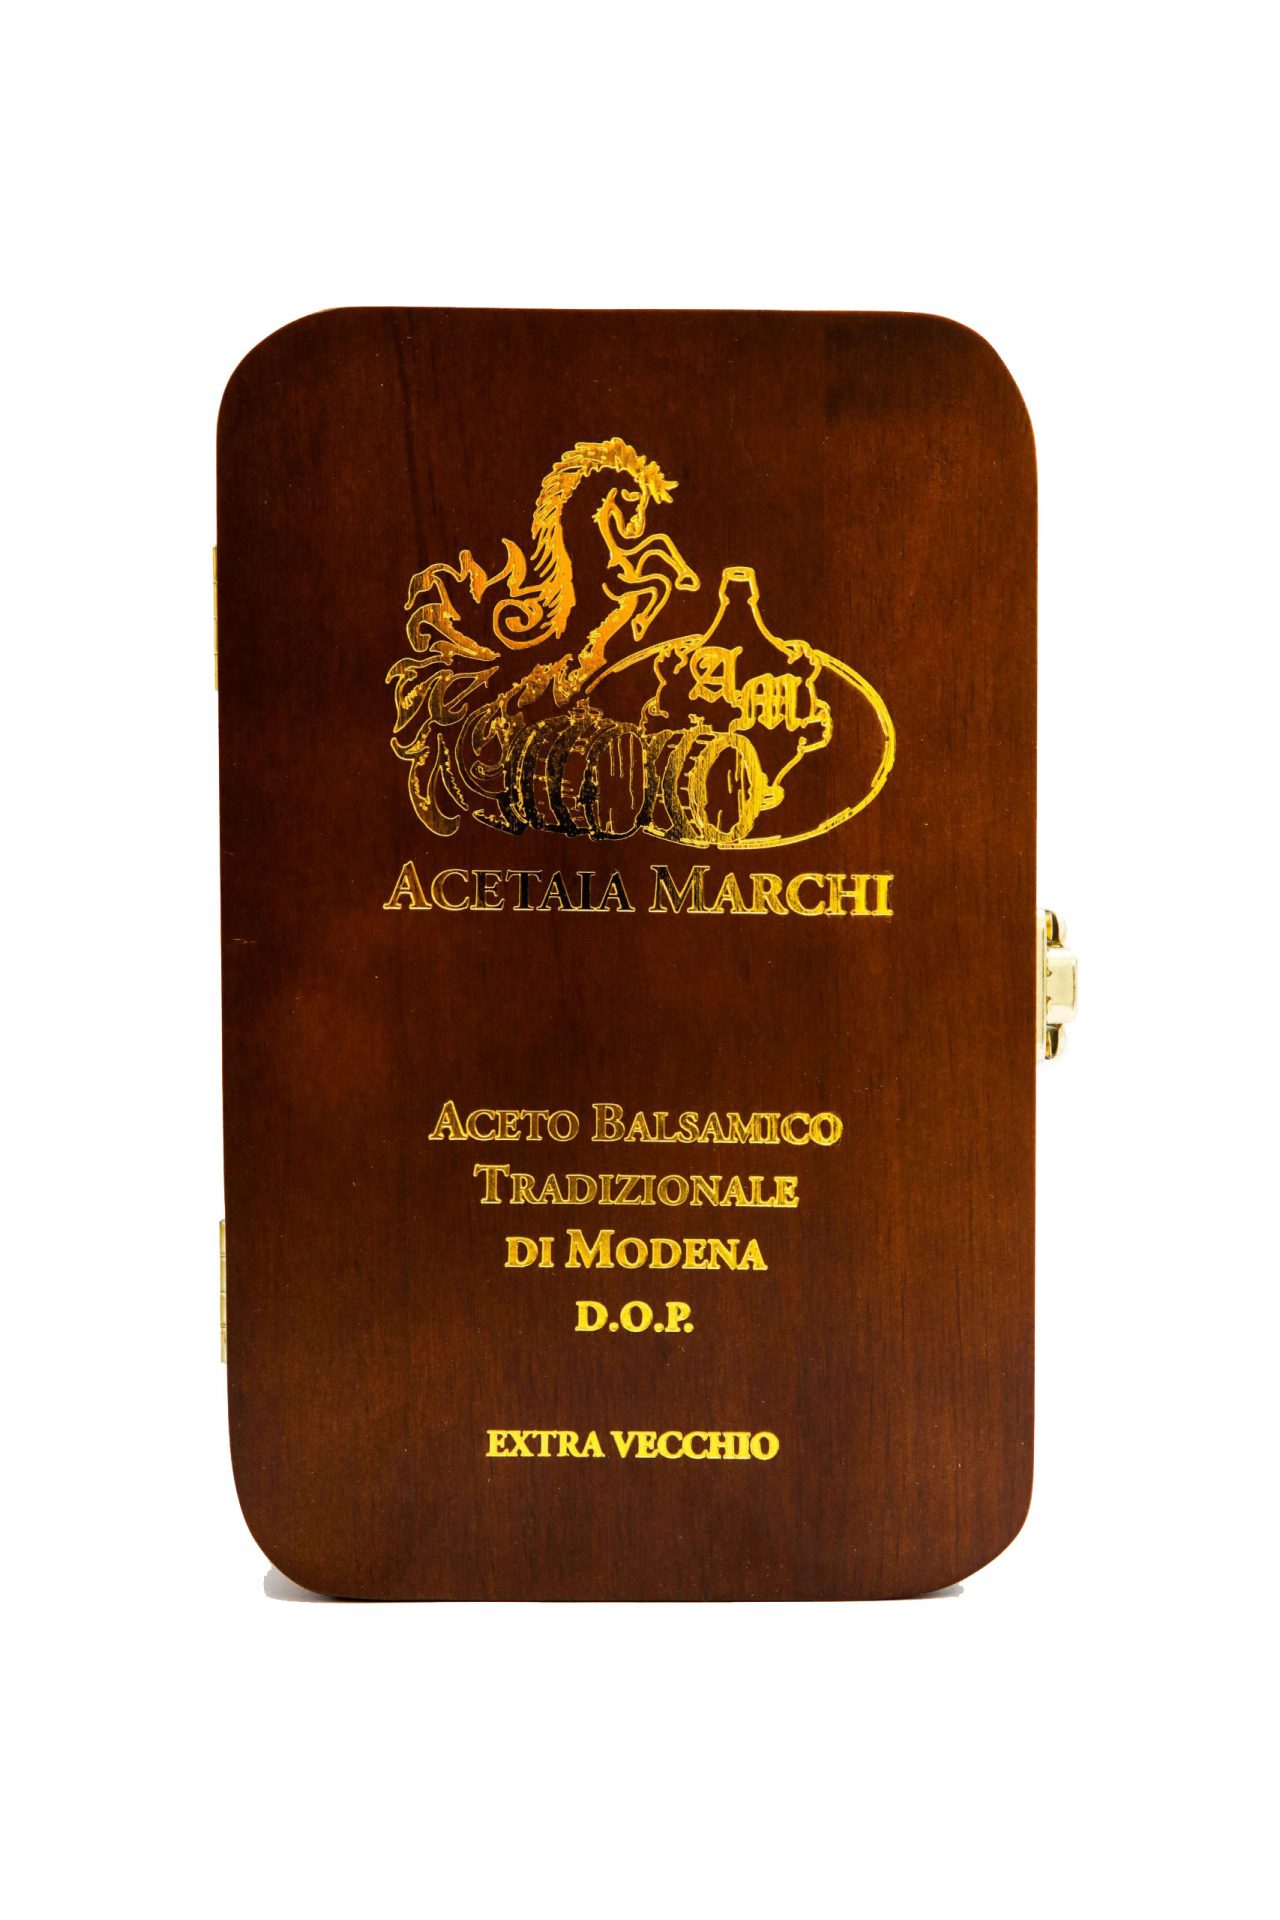 aceto-balsamico-tradizionale-di-modena-dop-extravecchio-francesco-confezione-legno-scritte-oro